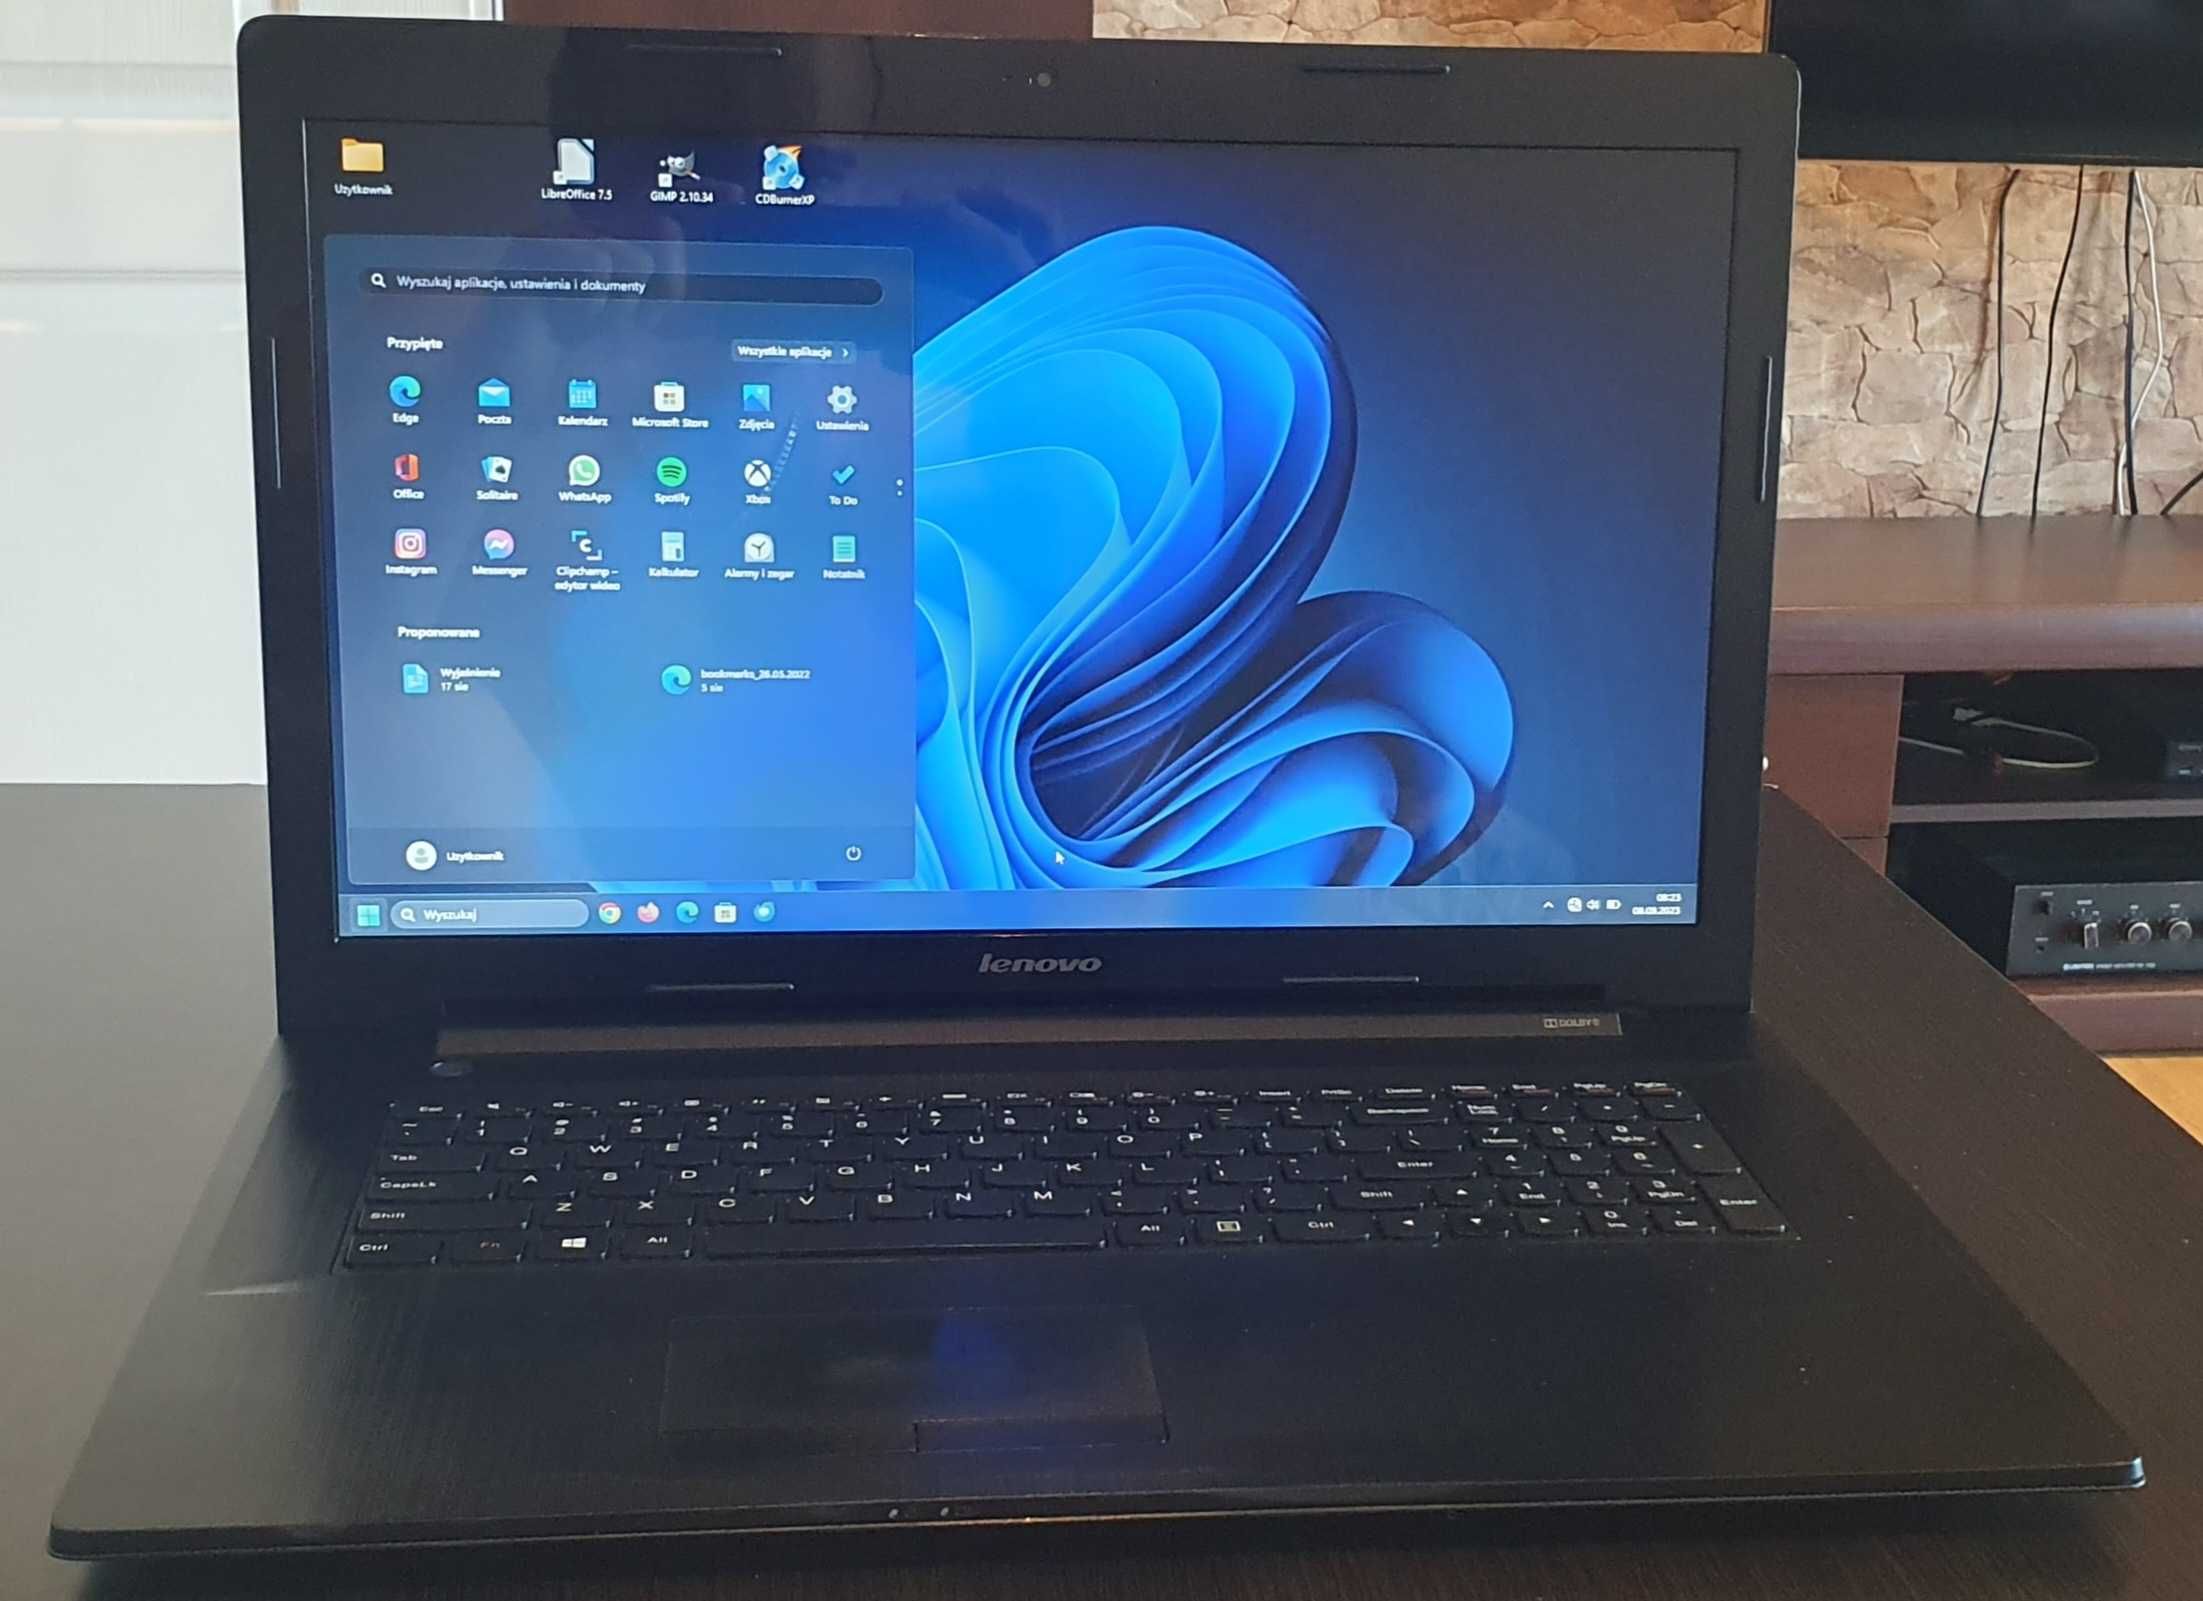 Laptop Lenovo B70-80 ekran 17,3 (ekran nowy 7 miesięcy) 100% sprawny